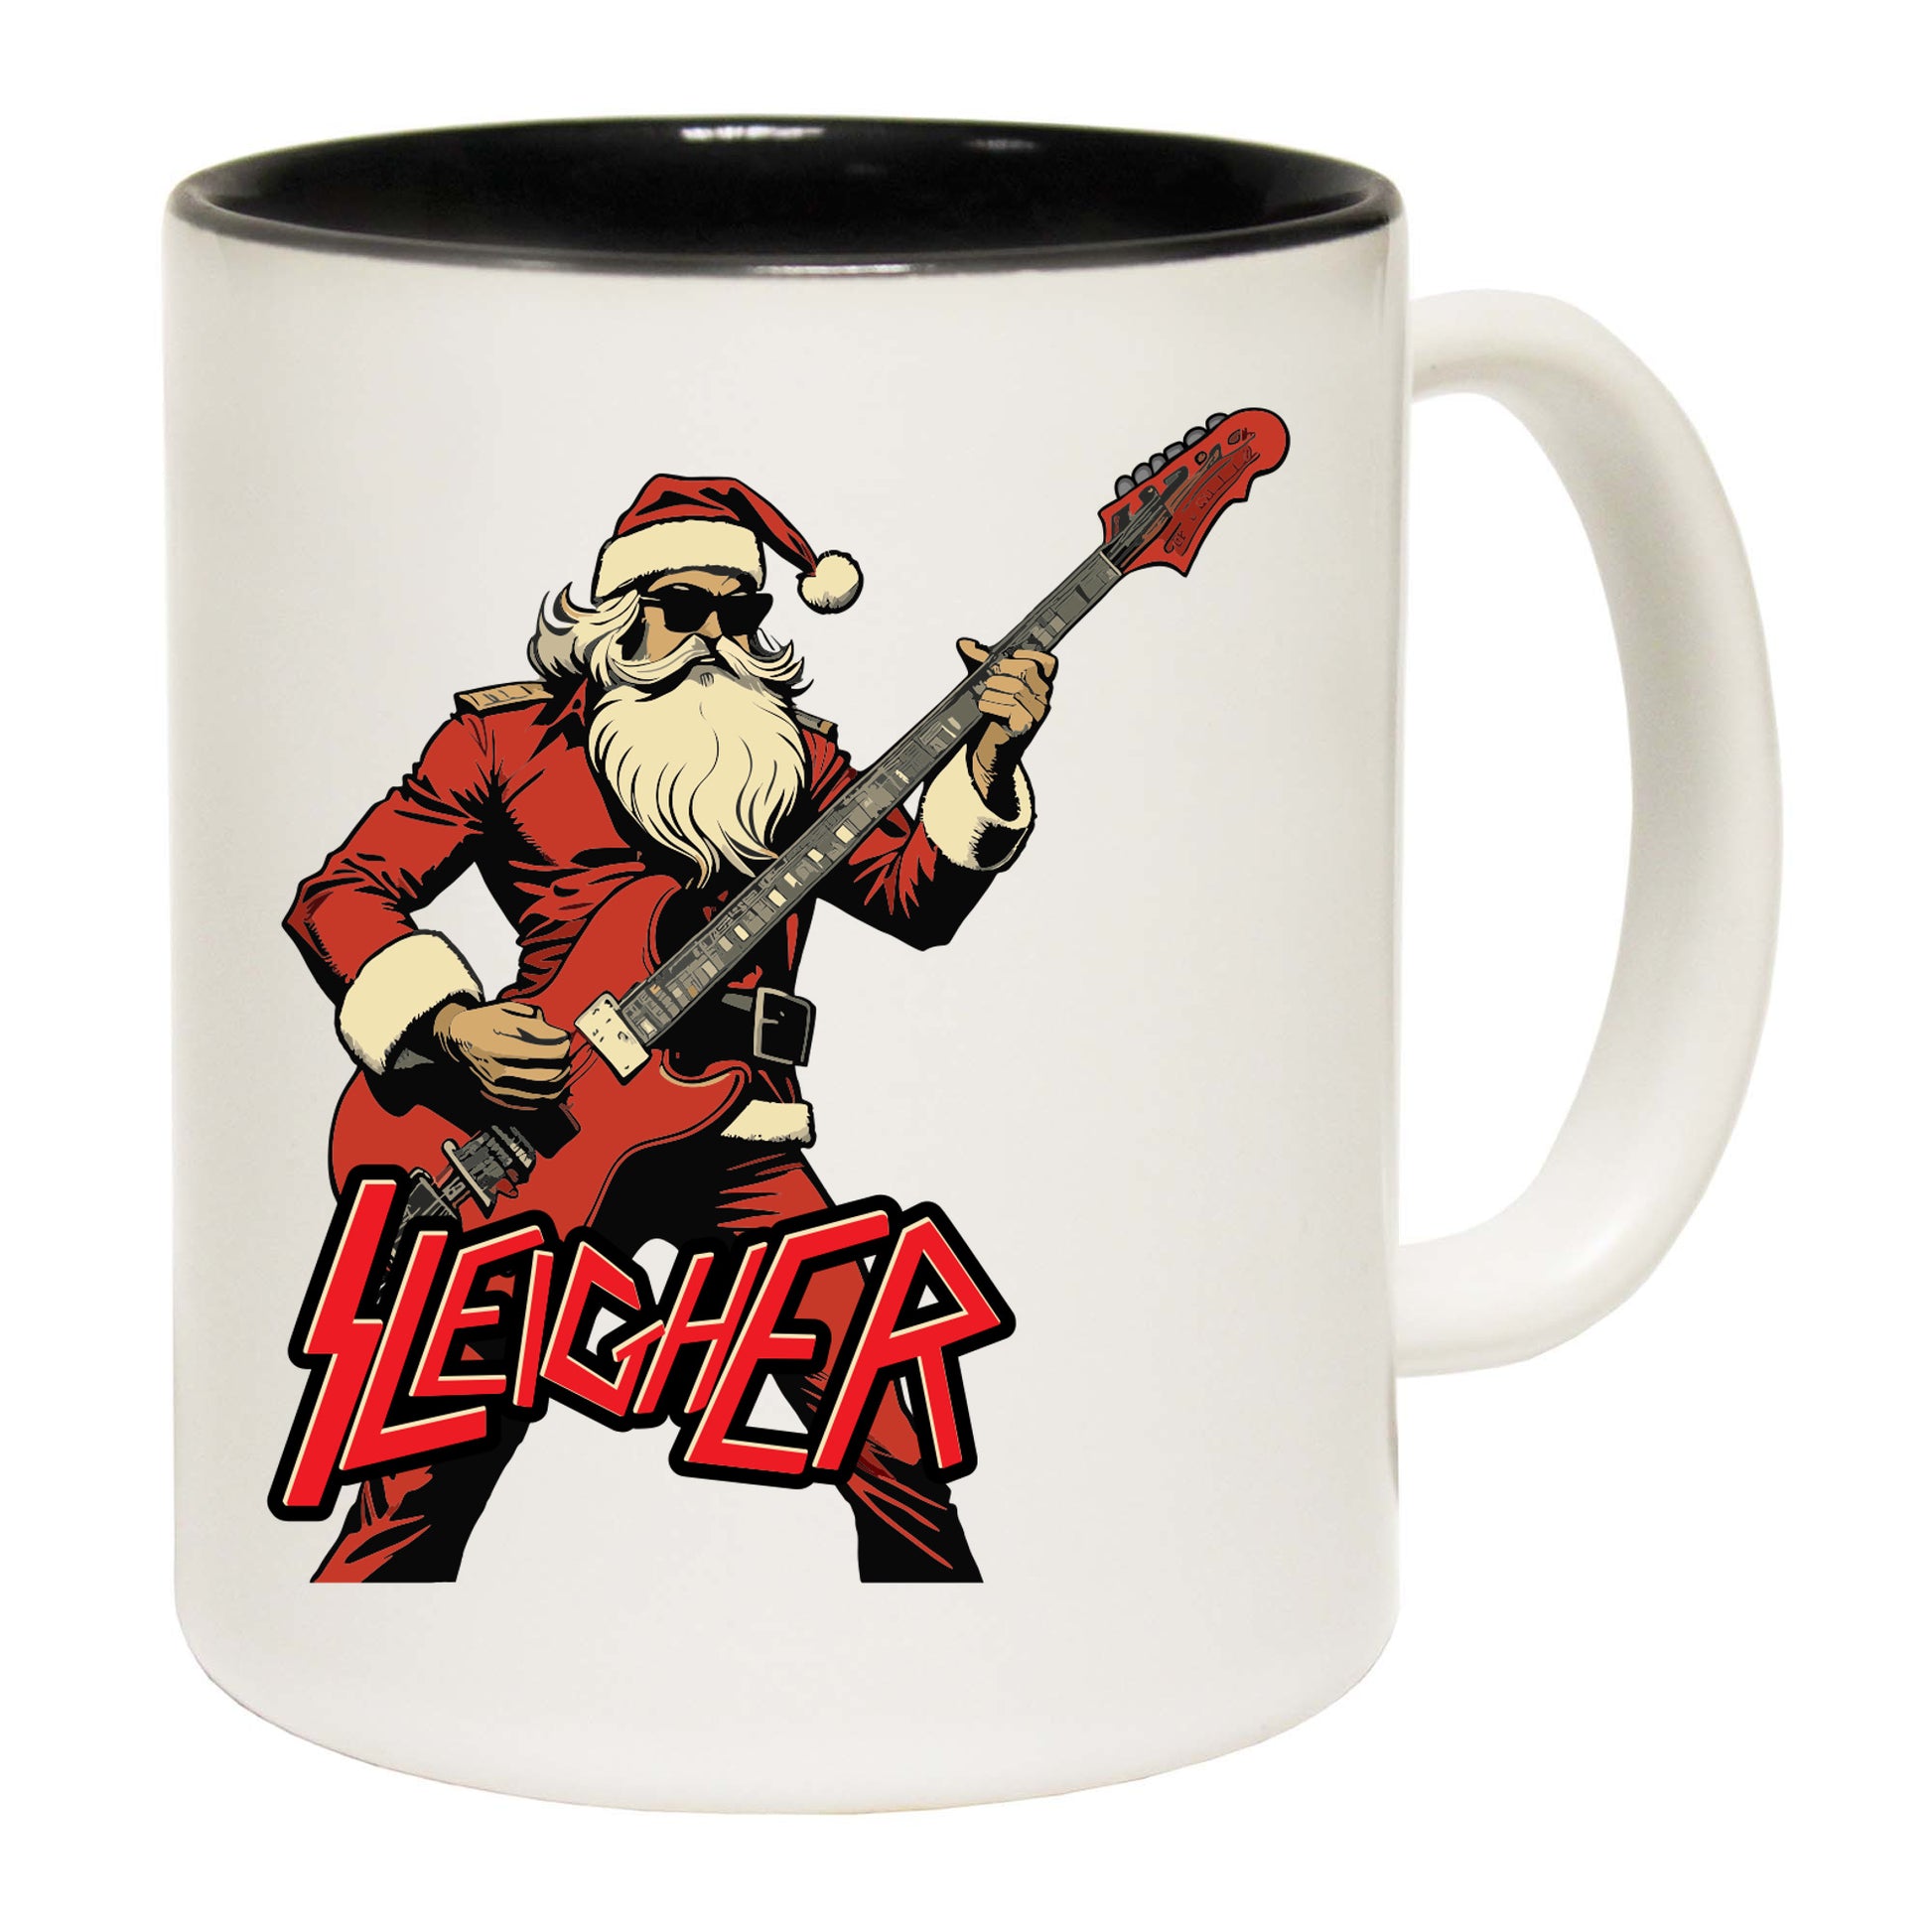 Christmas Sleigher - Funny Coffee Mug